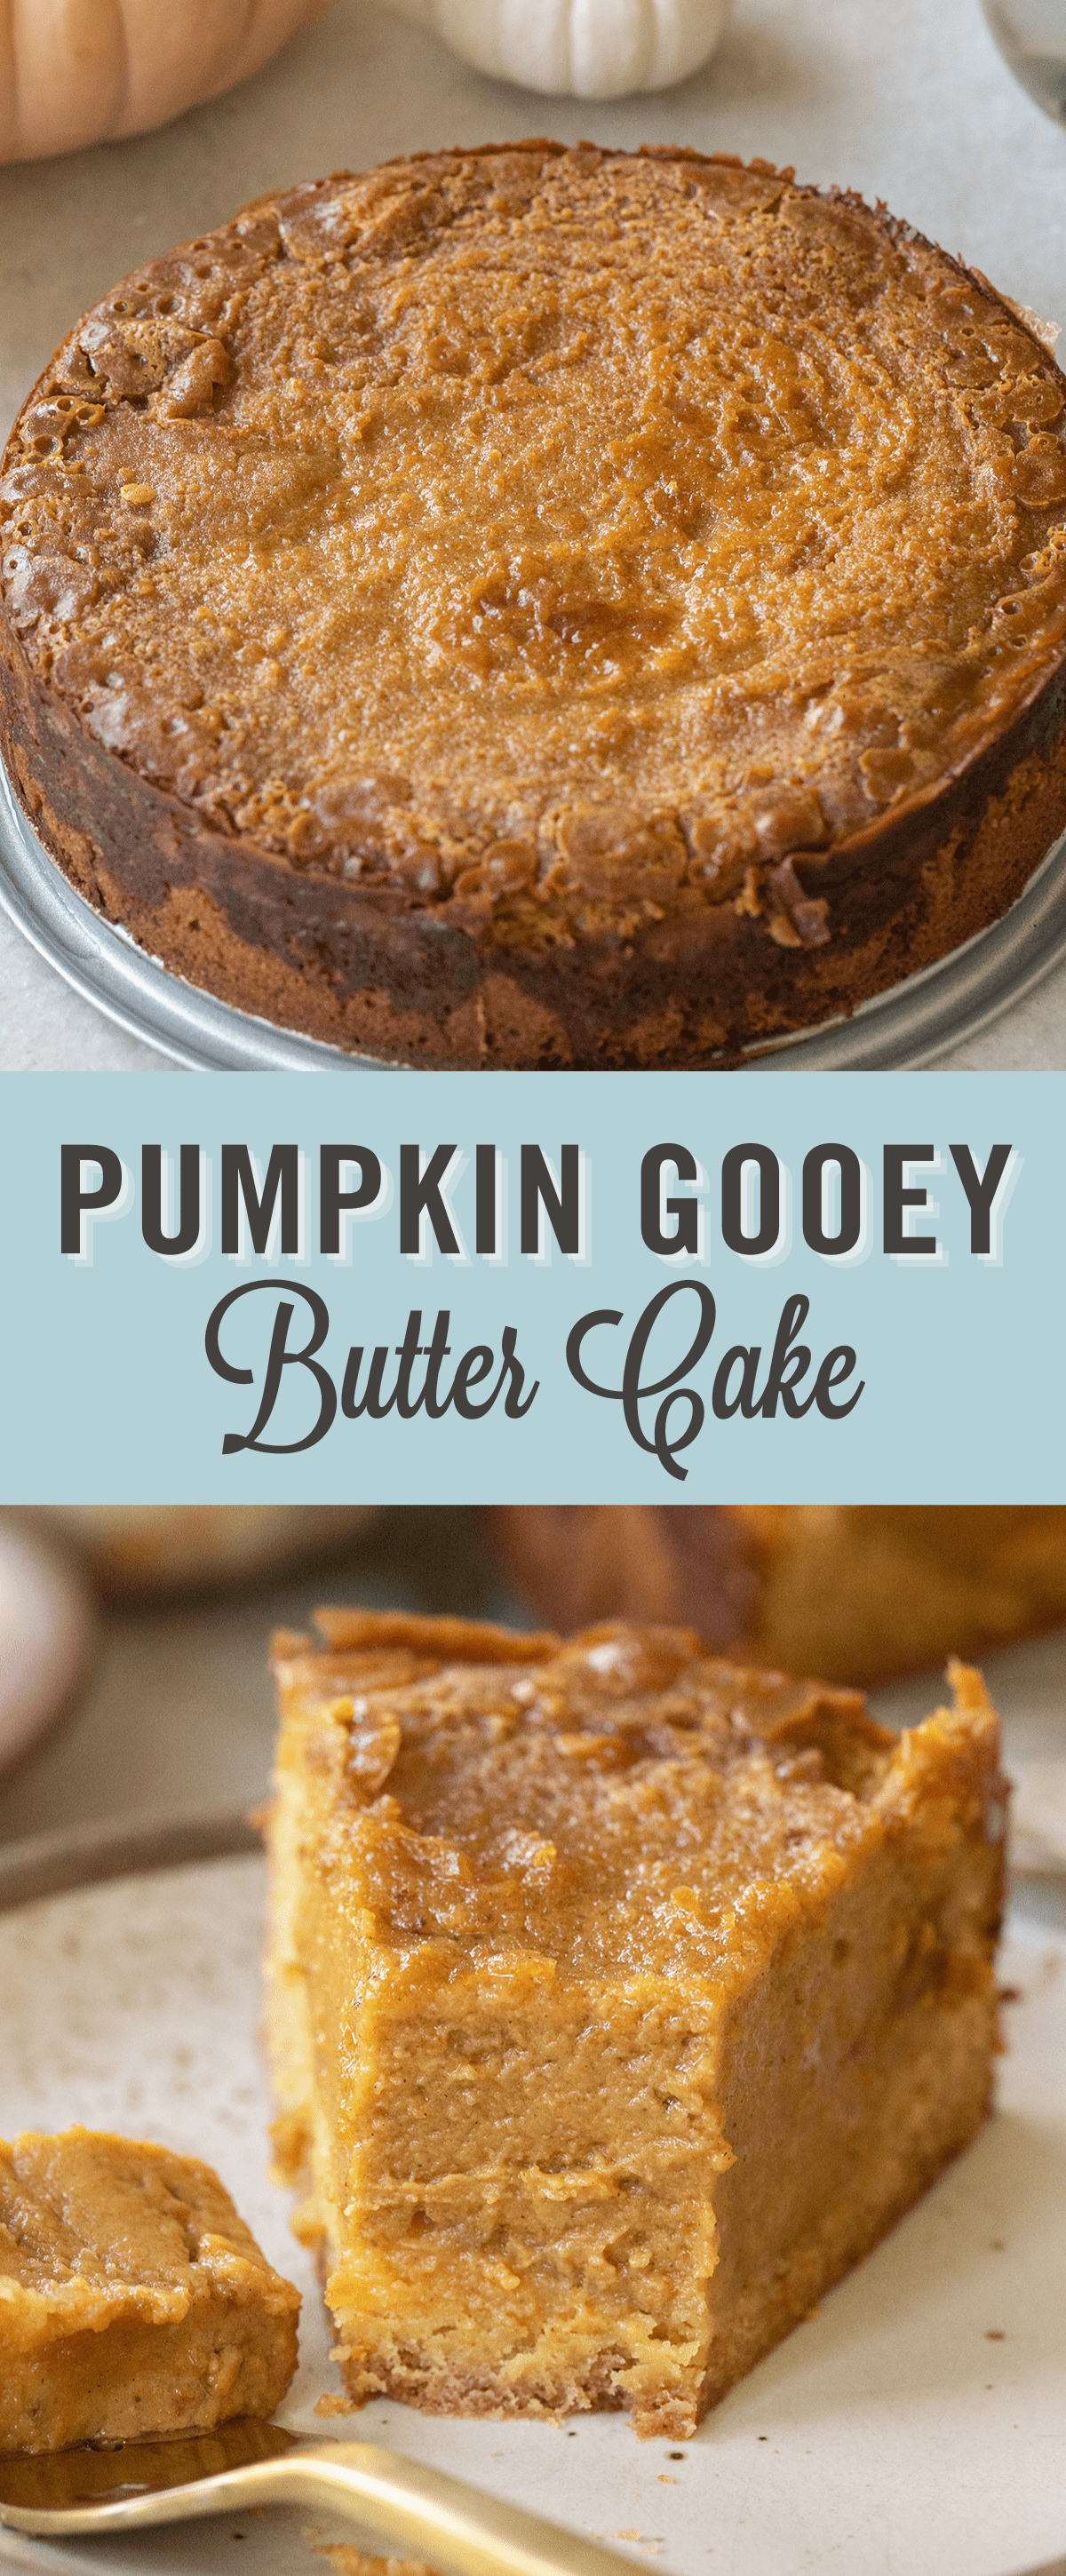 Gooey pumpkin butter cake recipe.